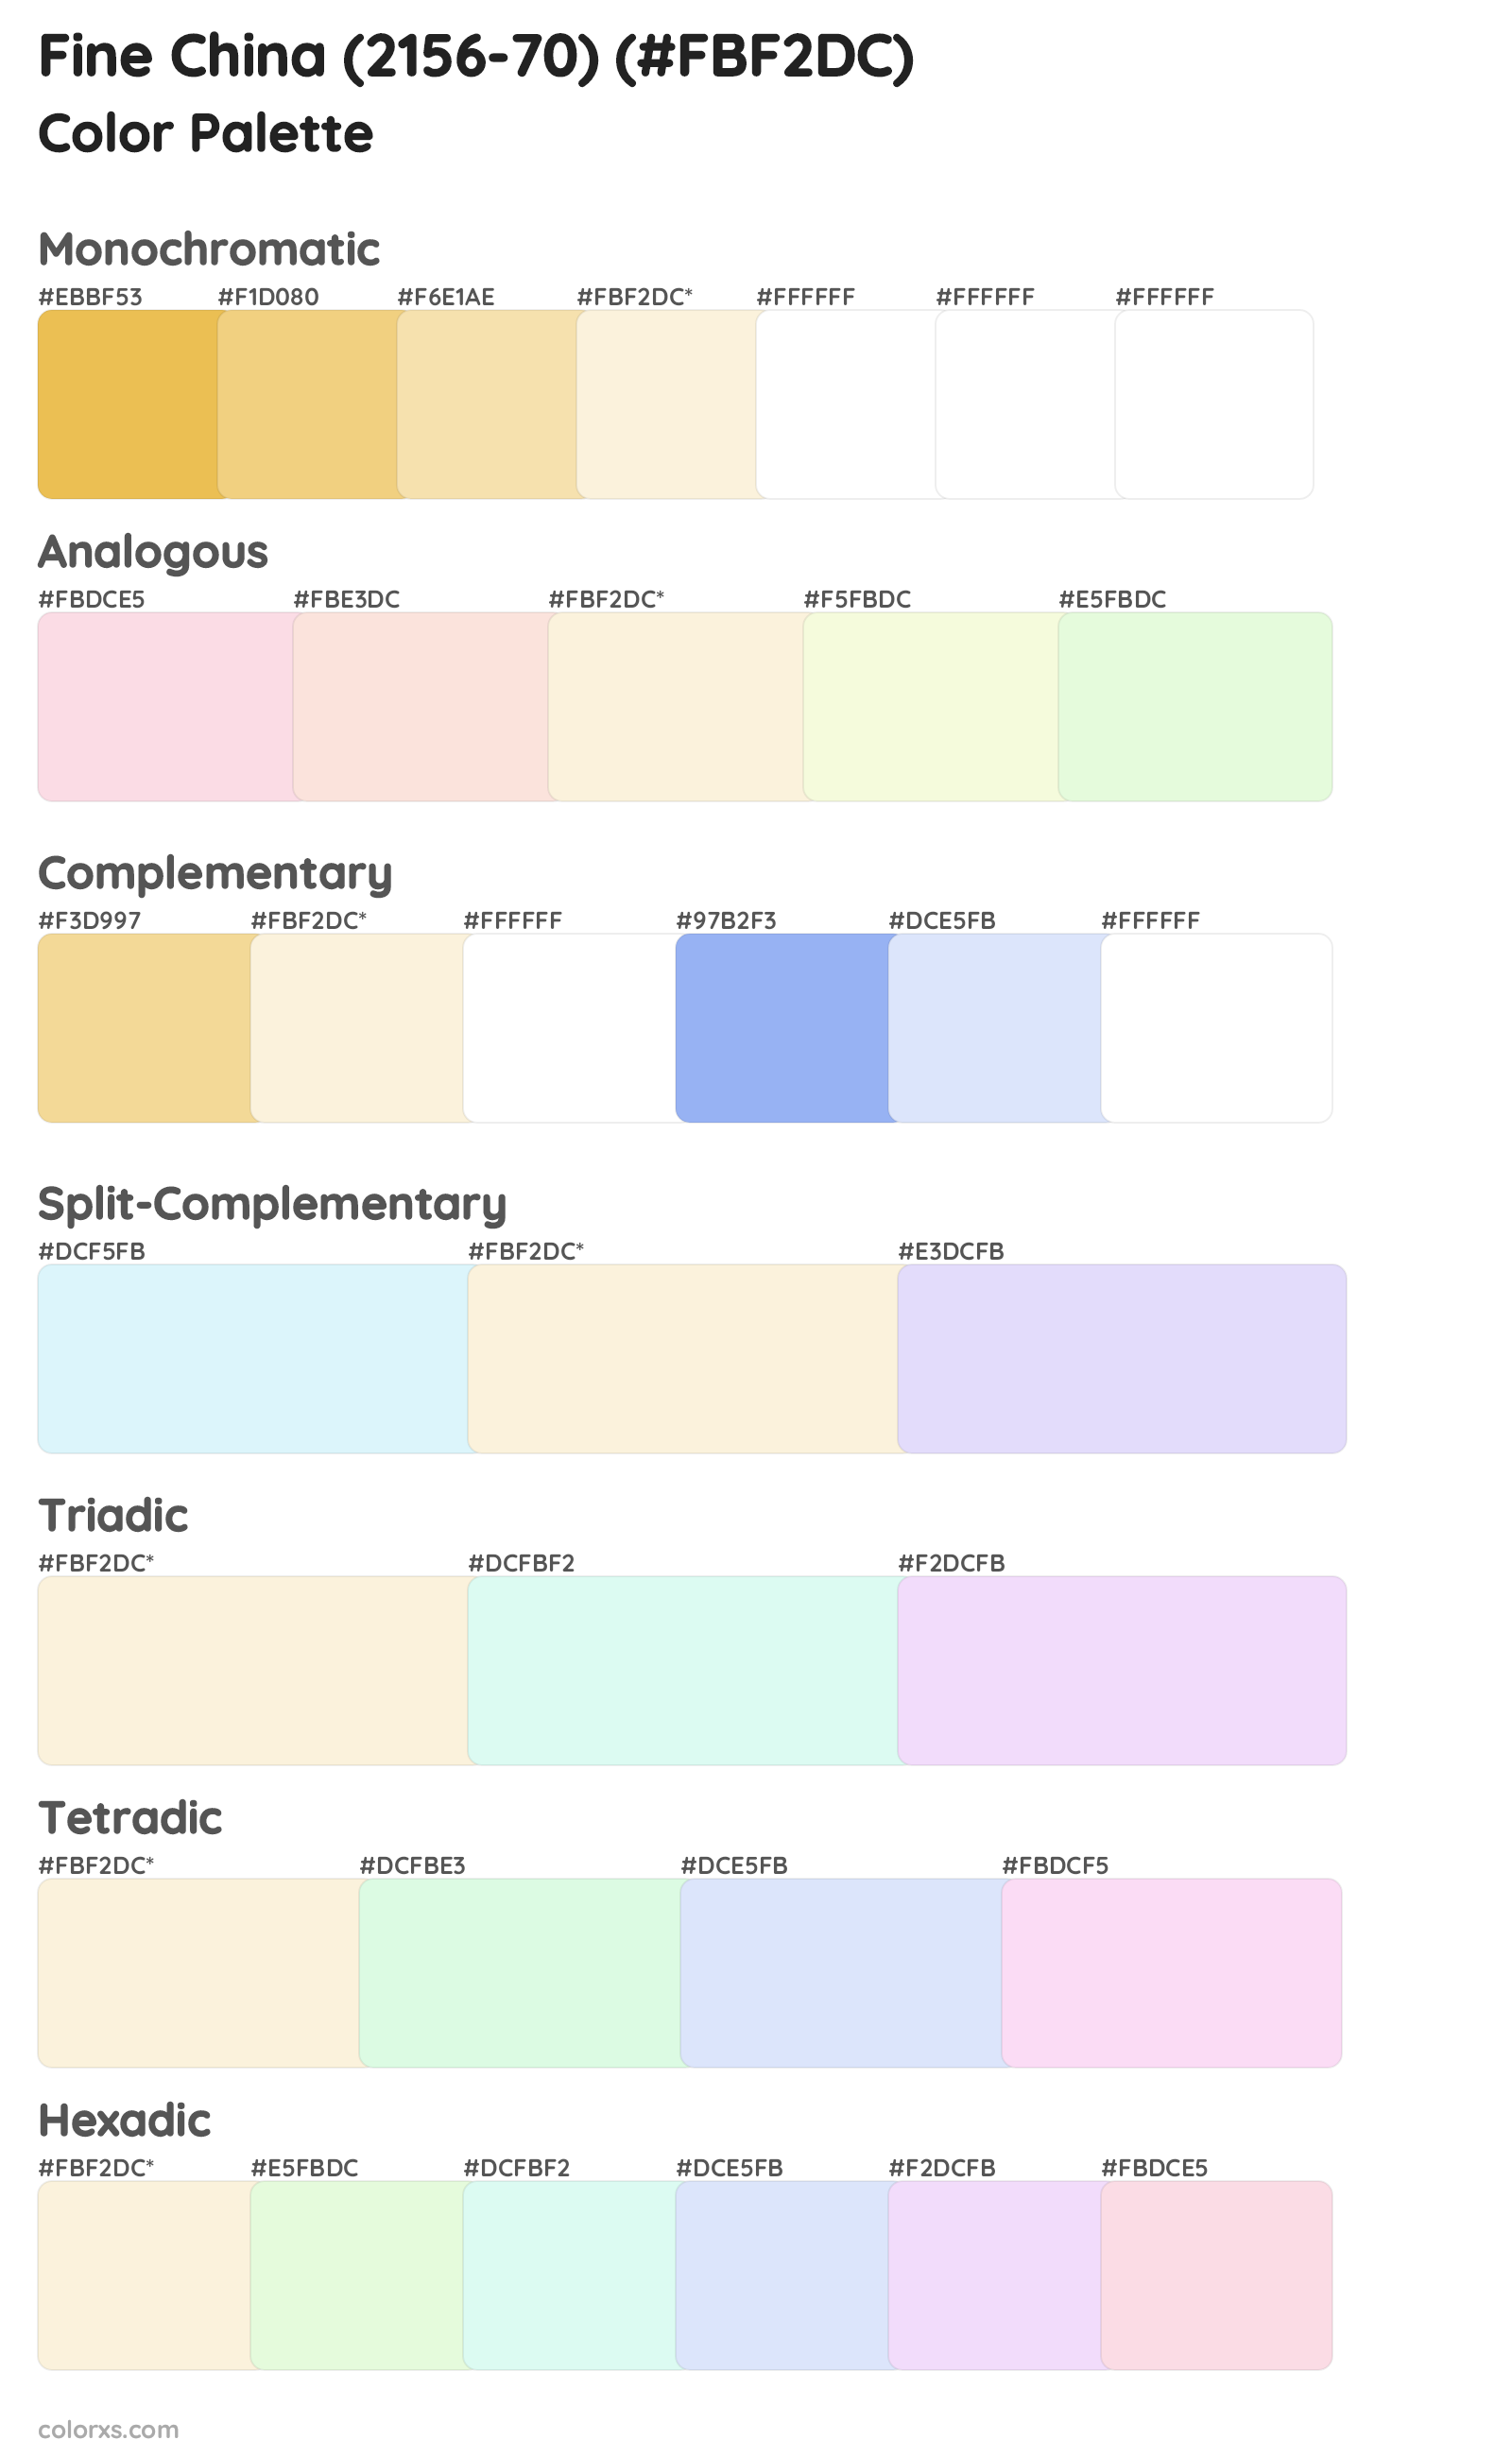 Fine China (2156-70) Color Scheme Palettes